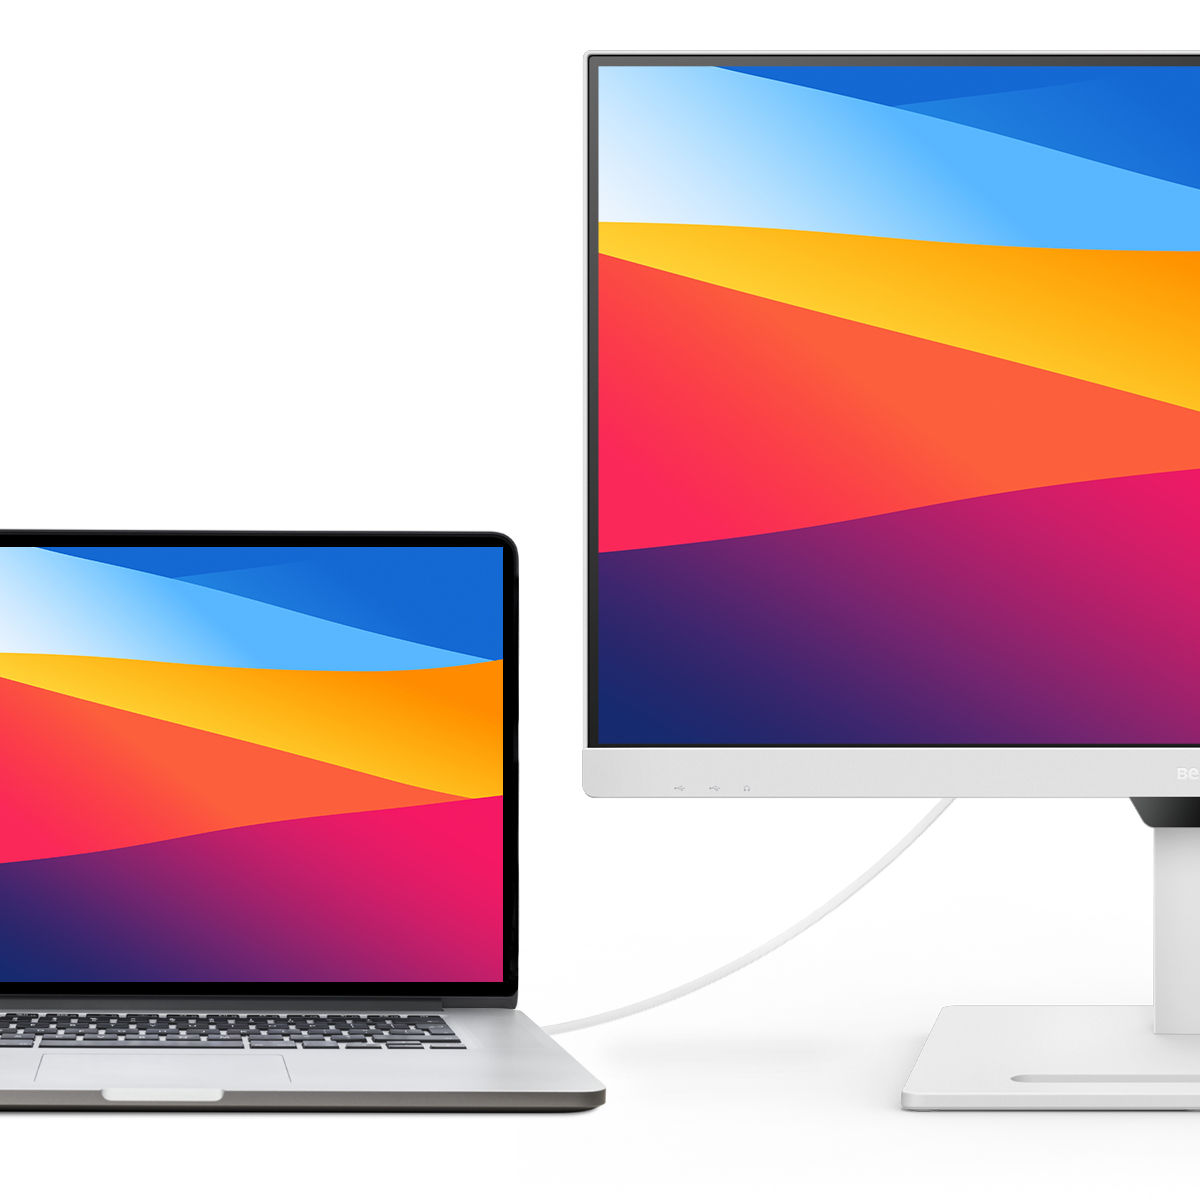 BenQ BL2790QT Dedicat pentru a reduce la minimum diferenţele vizuale dintre monitor şi produsul din seria MacBook conectat.